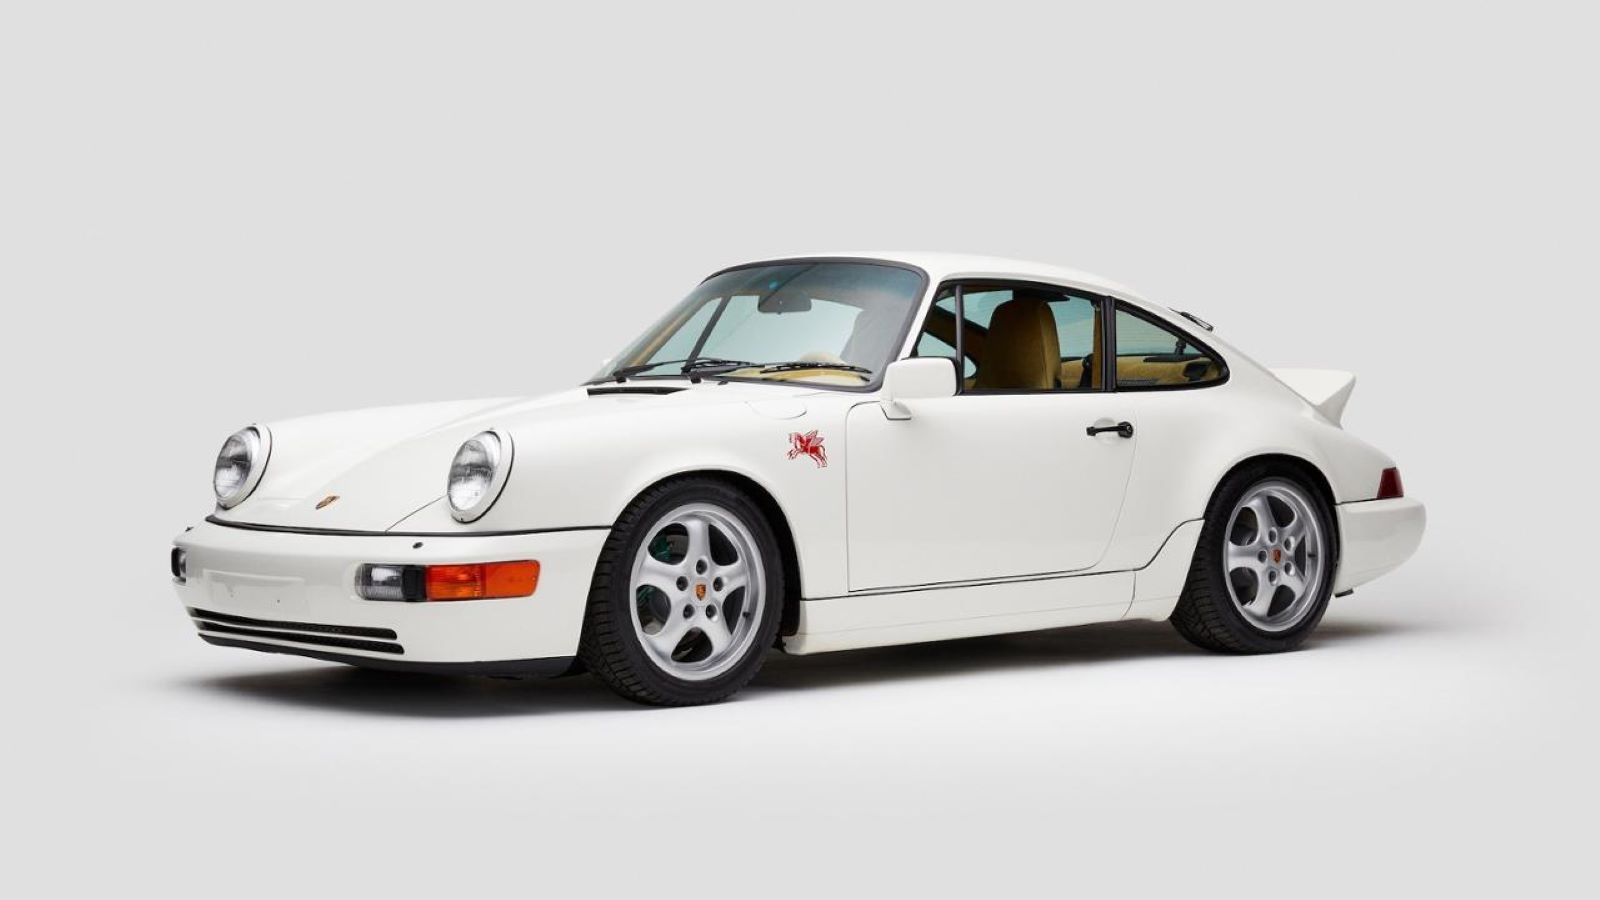 Teddy Santis & Porsche Design a 964 911